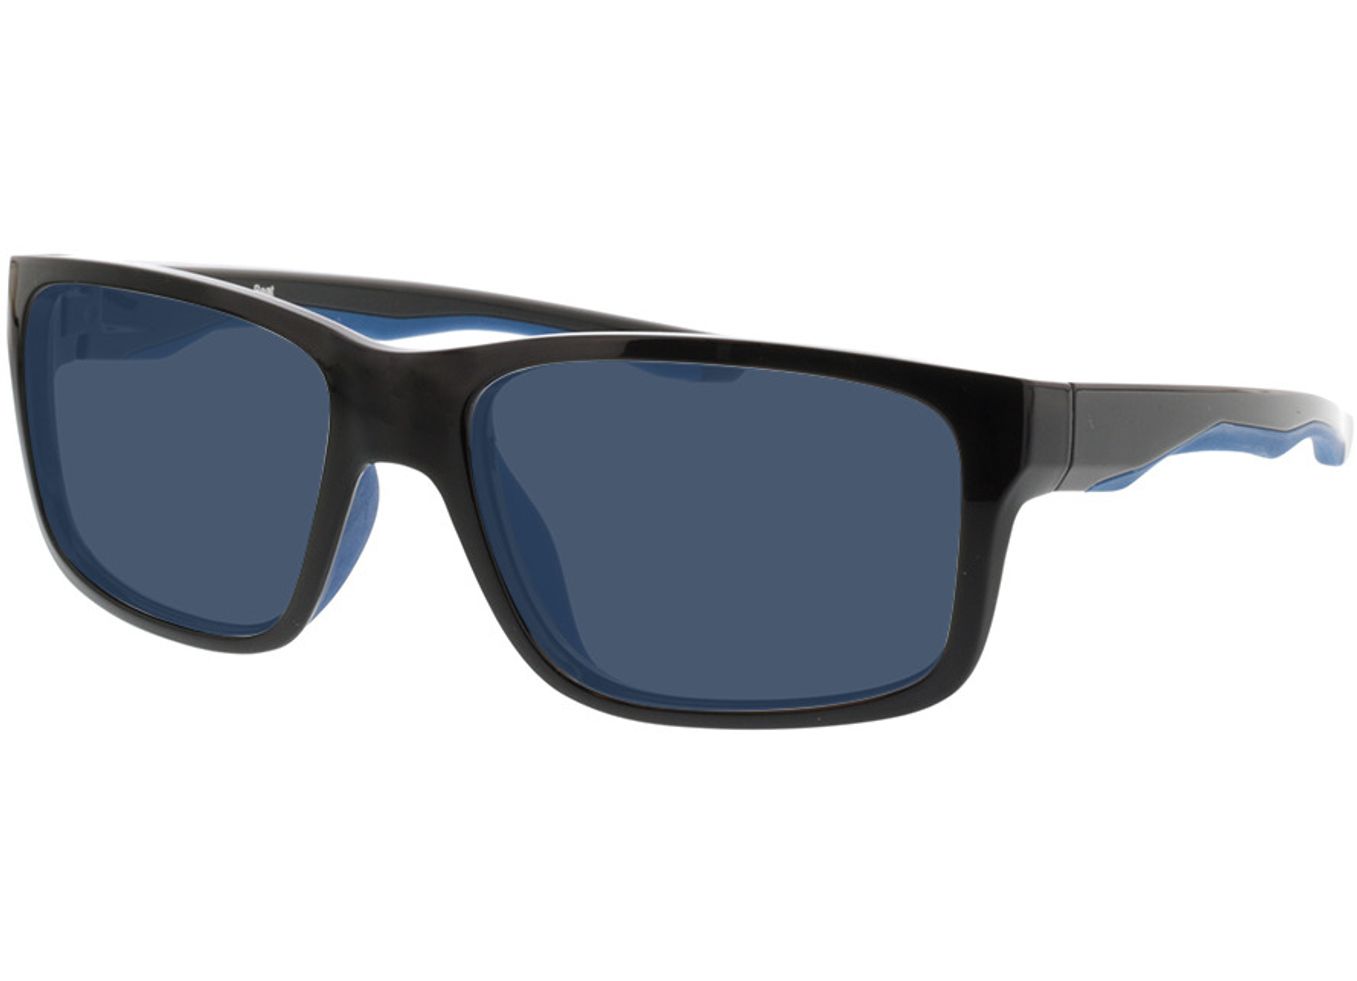 Beat - schwarz/dunkelblau Sonnenbrille ohne Sehstärke, Vollrand, Eckig von Active by Brille24